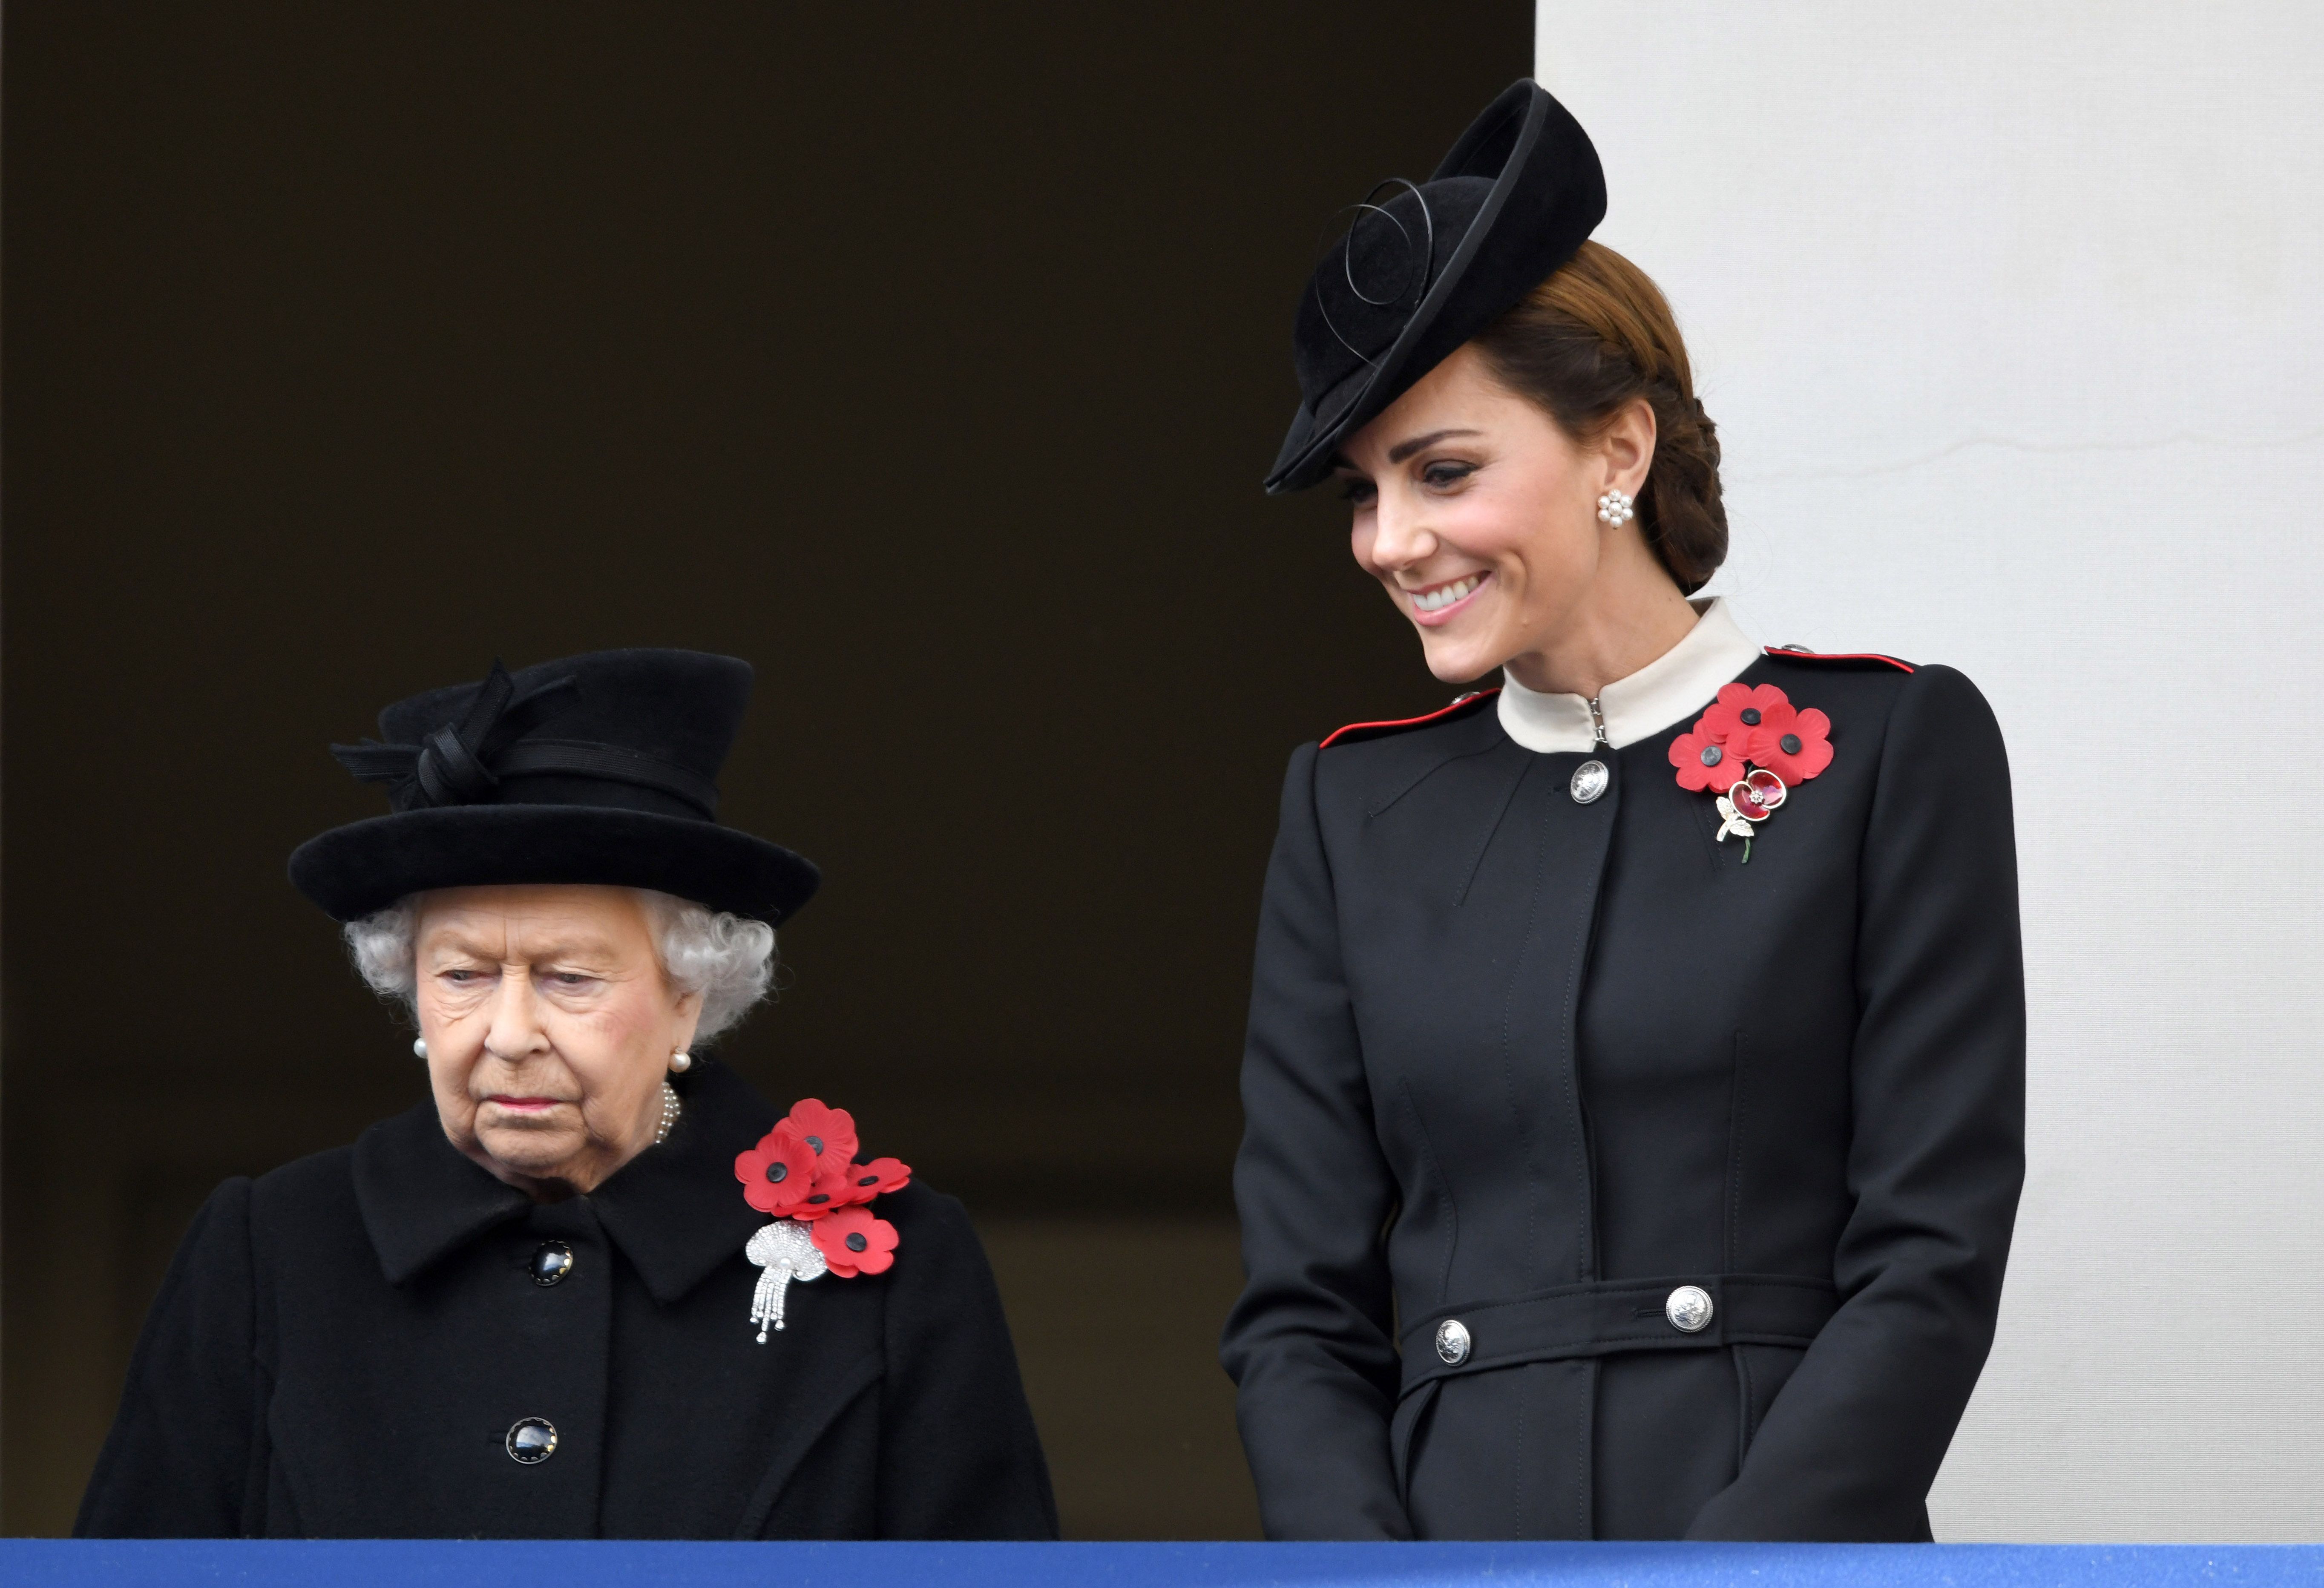 Queen Elizabeth II vs. Catherine, Duchess of Cambridge: Royal